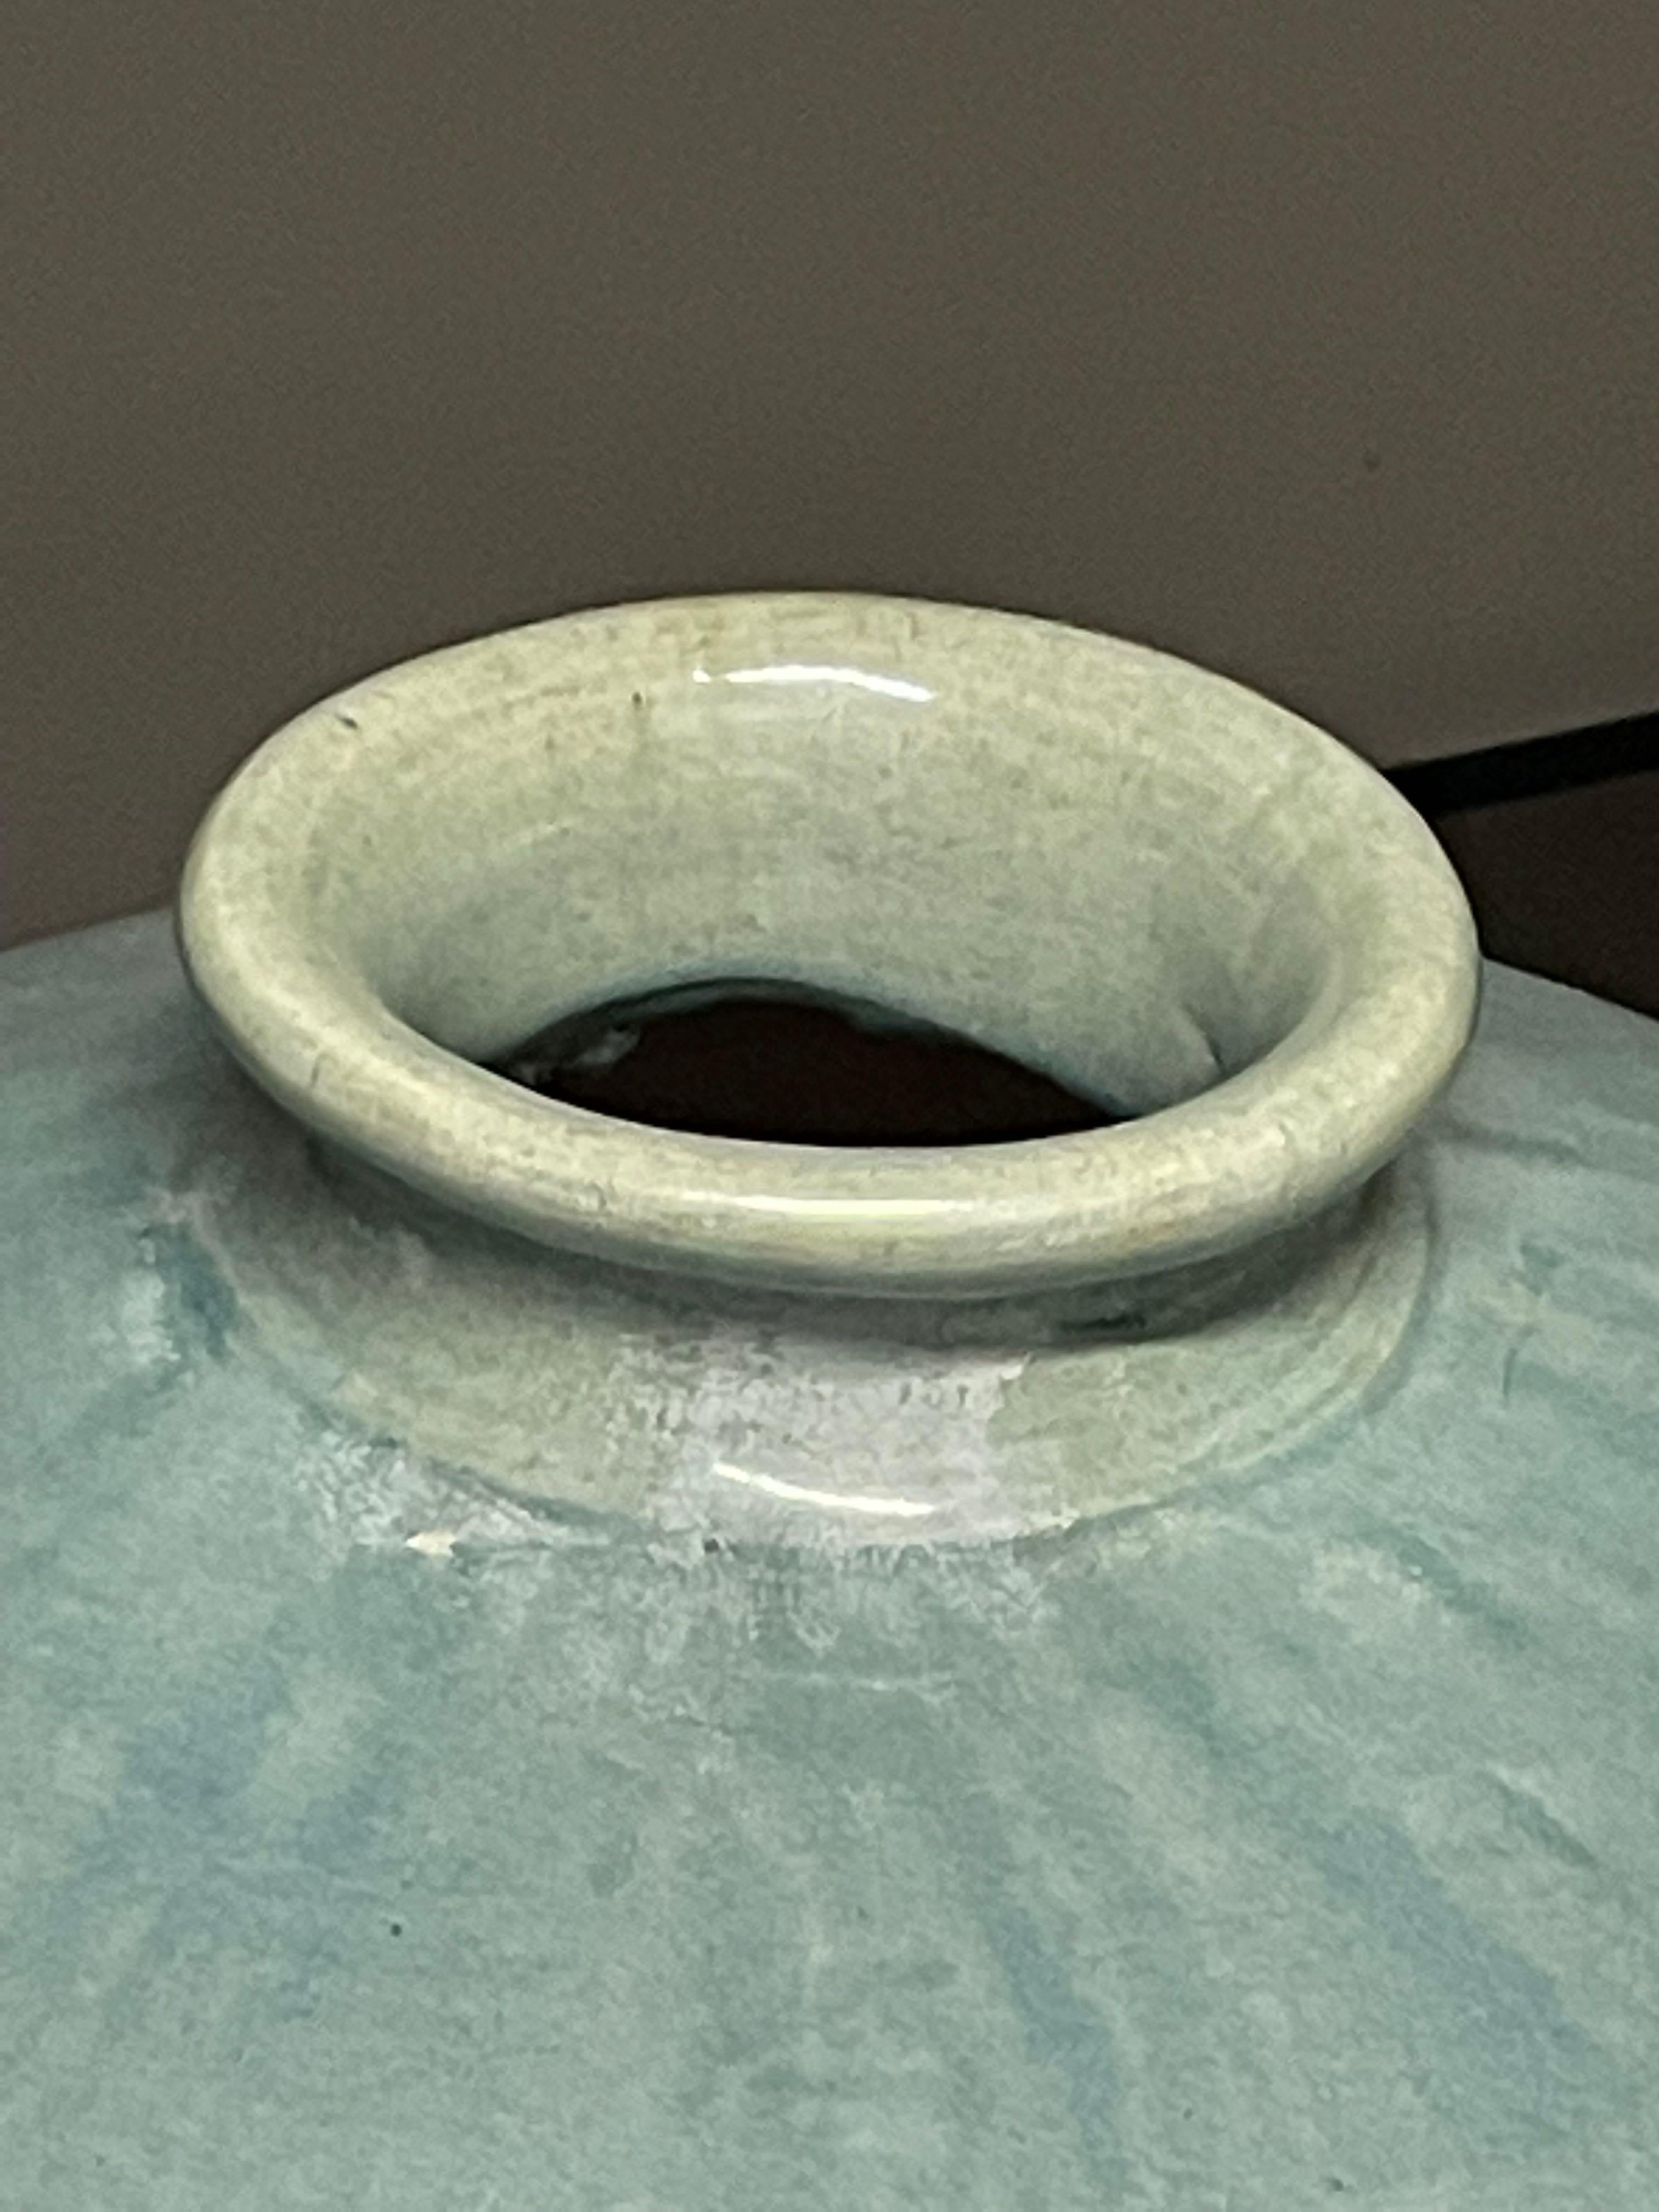 Vase chinois contemporain à glaçure turquoise lavée.
Forme trapue avec une base arrondie.
